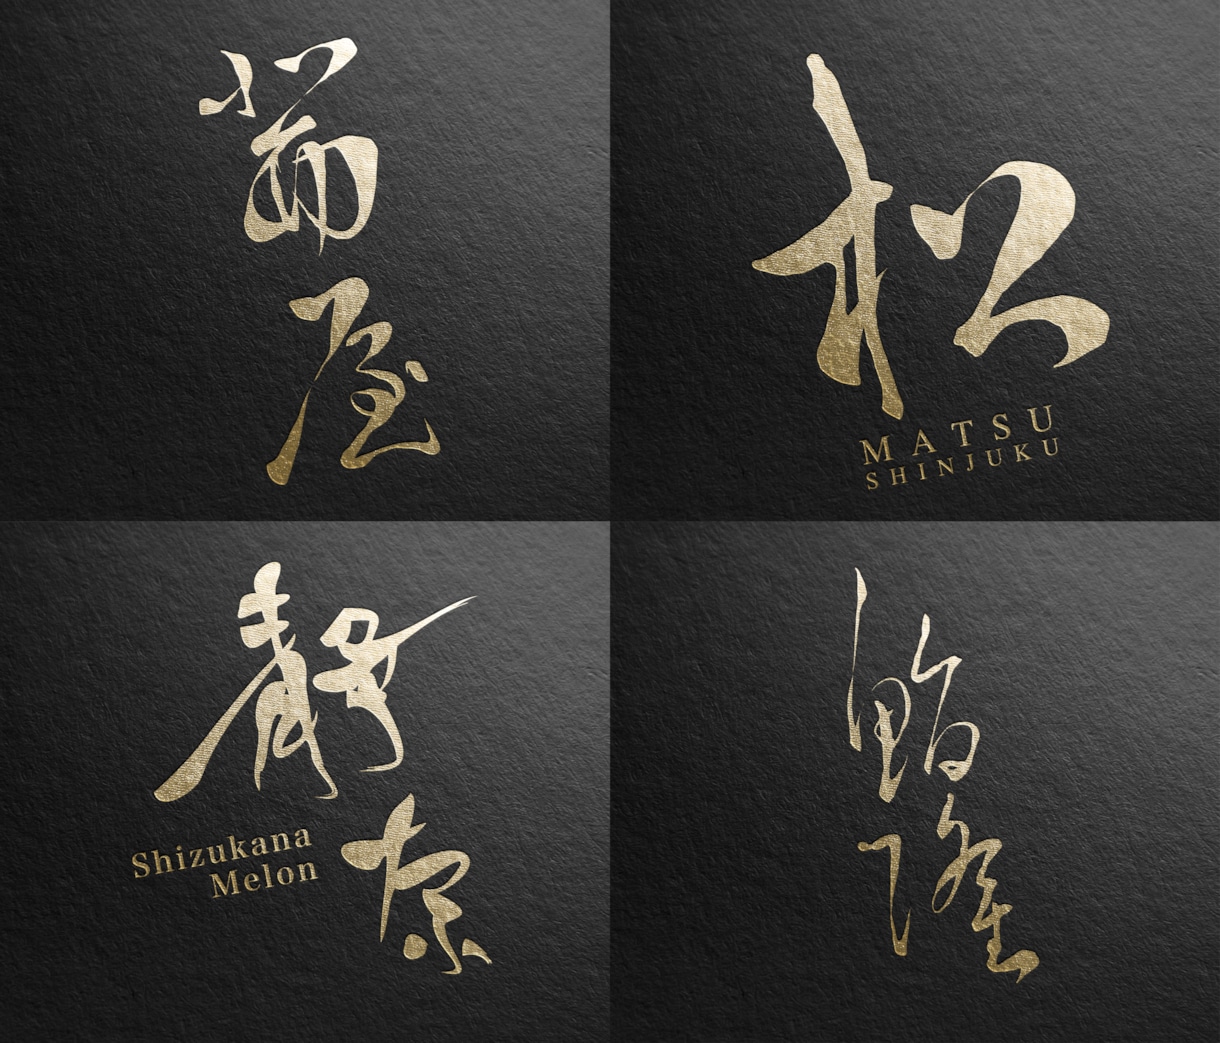 現役デザイナーが「あじわいがある漢字ロゴ」作ります 草書をメインに。高級料亭や和風ブランドにおすすめ。 イメージ1